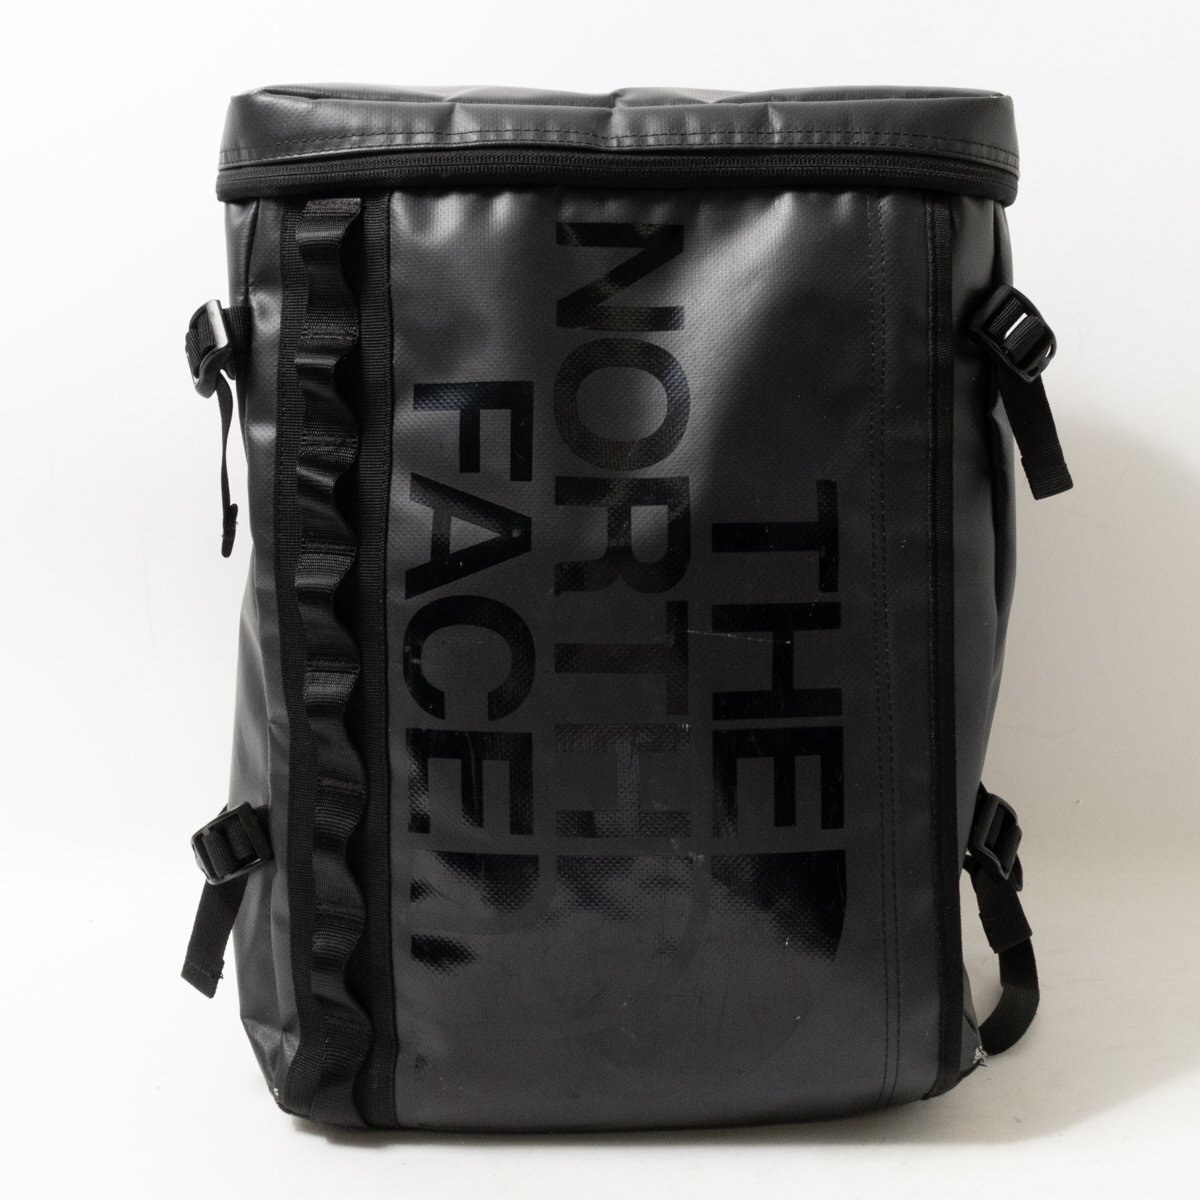 Рюкзак северного лица рюкзак на северном лице Черный черный принт пригородной застежка с открытой сумкой унисекс